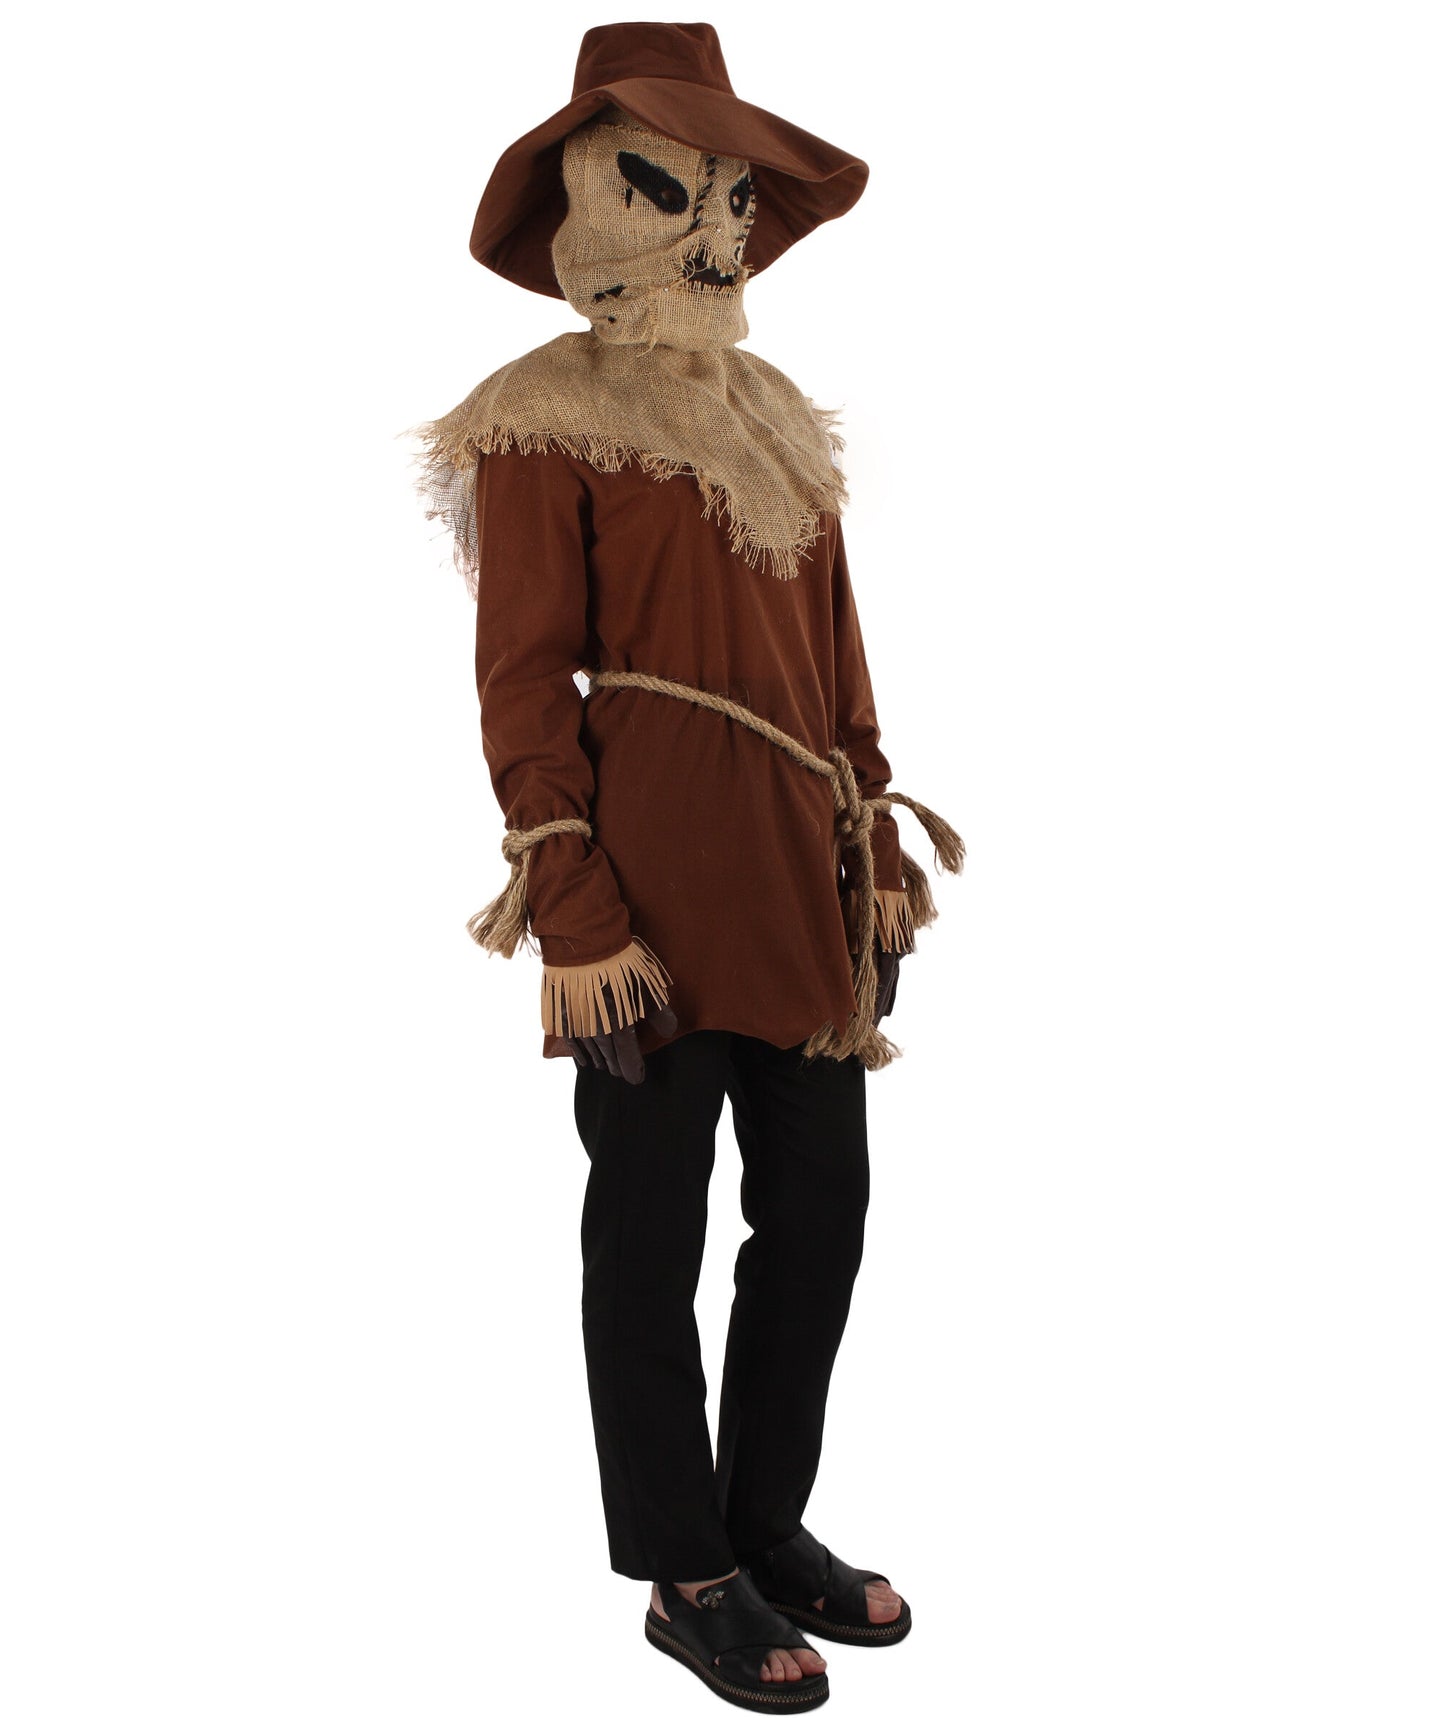  Scarecrow Halloween Costume